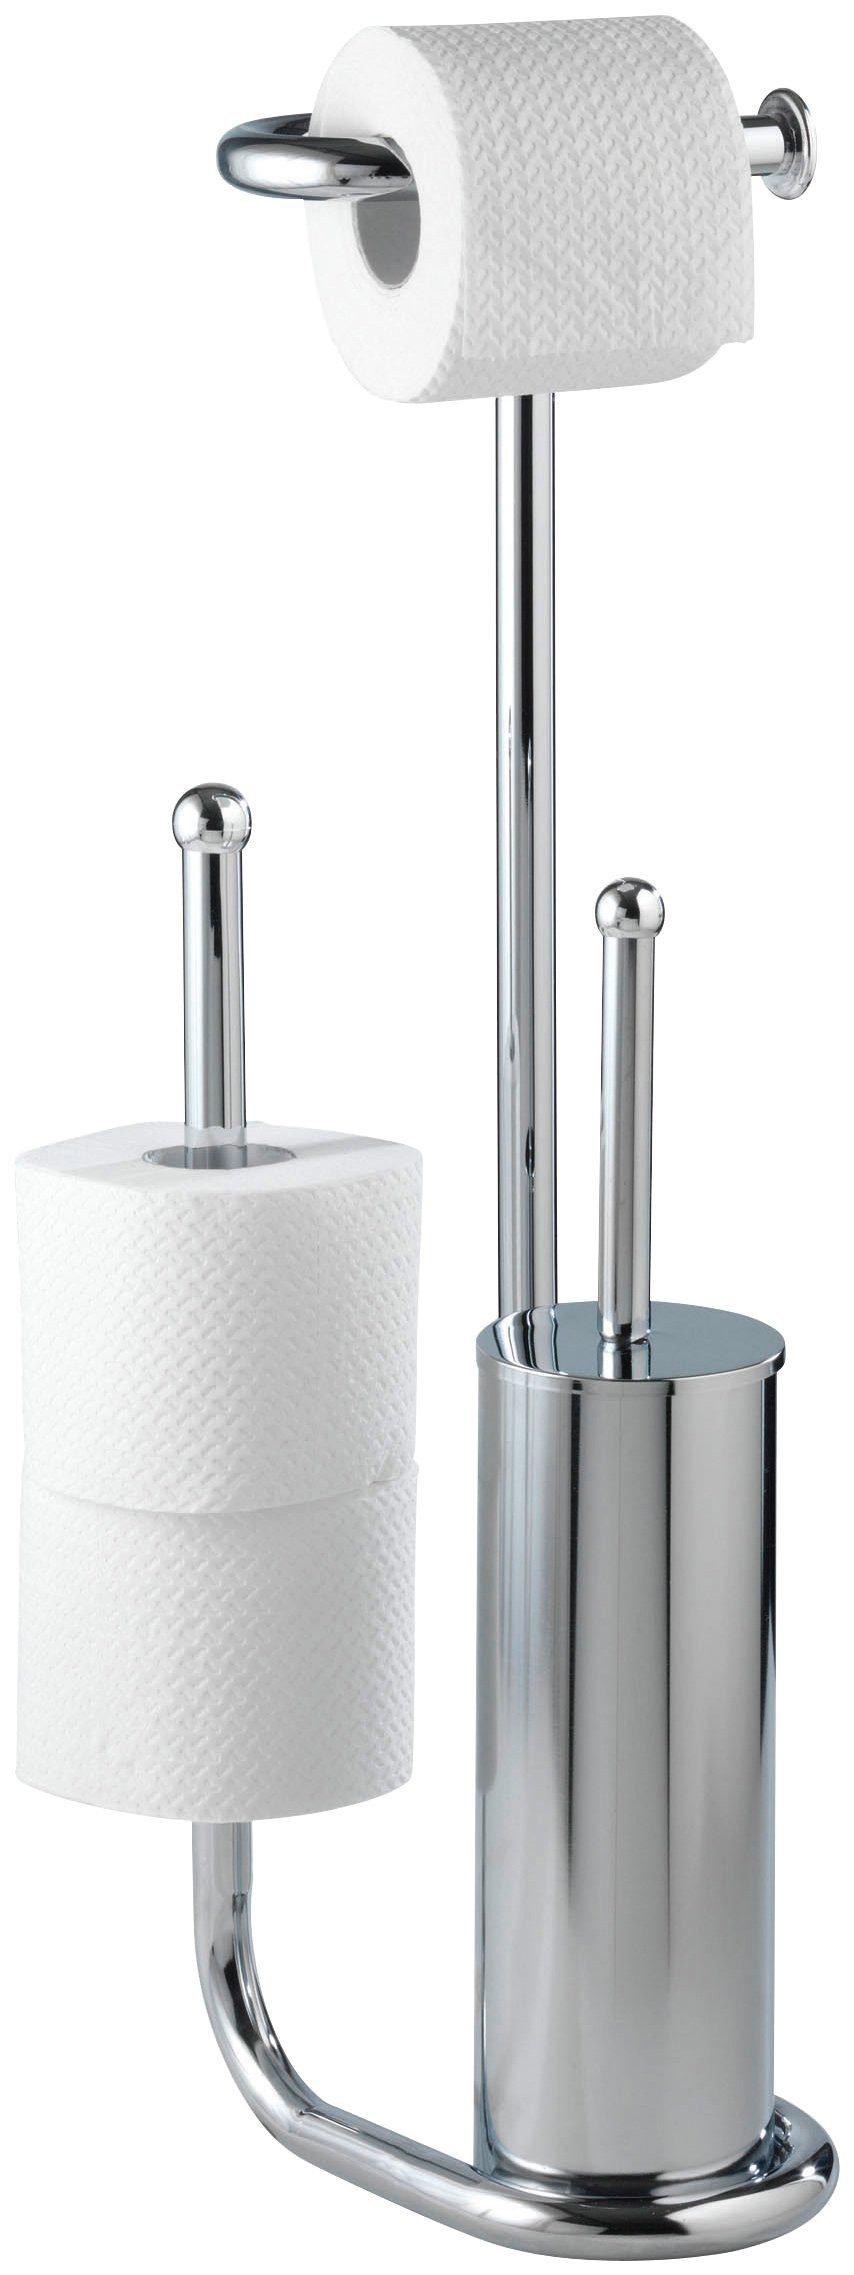 WENKO WC-Garnitur Universalo, integrierter Toilettenpapierhalter und WC-Bürstenhalter